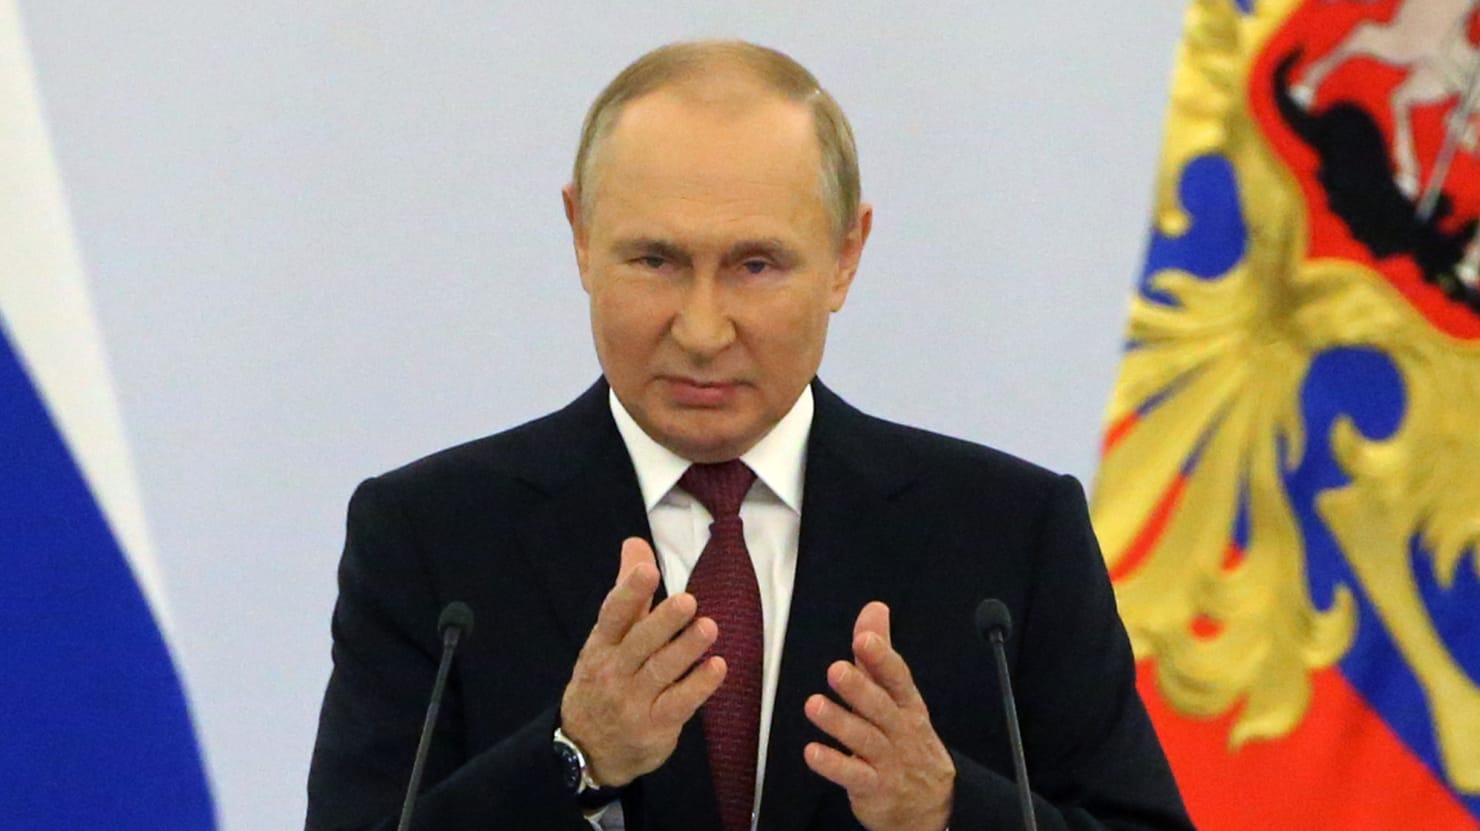 El principal compinche de Putin admite que quieren “llorar y entrar en pánico” por Ucrania